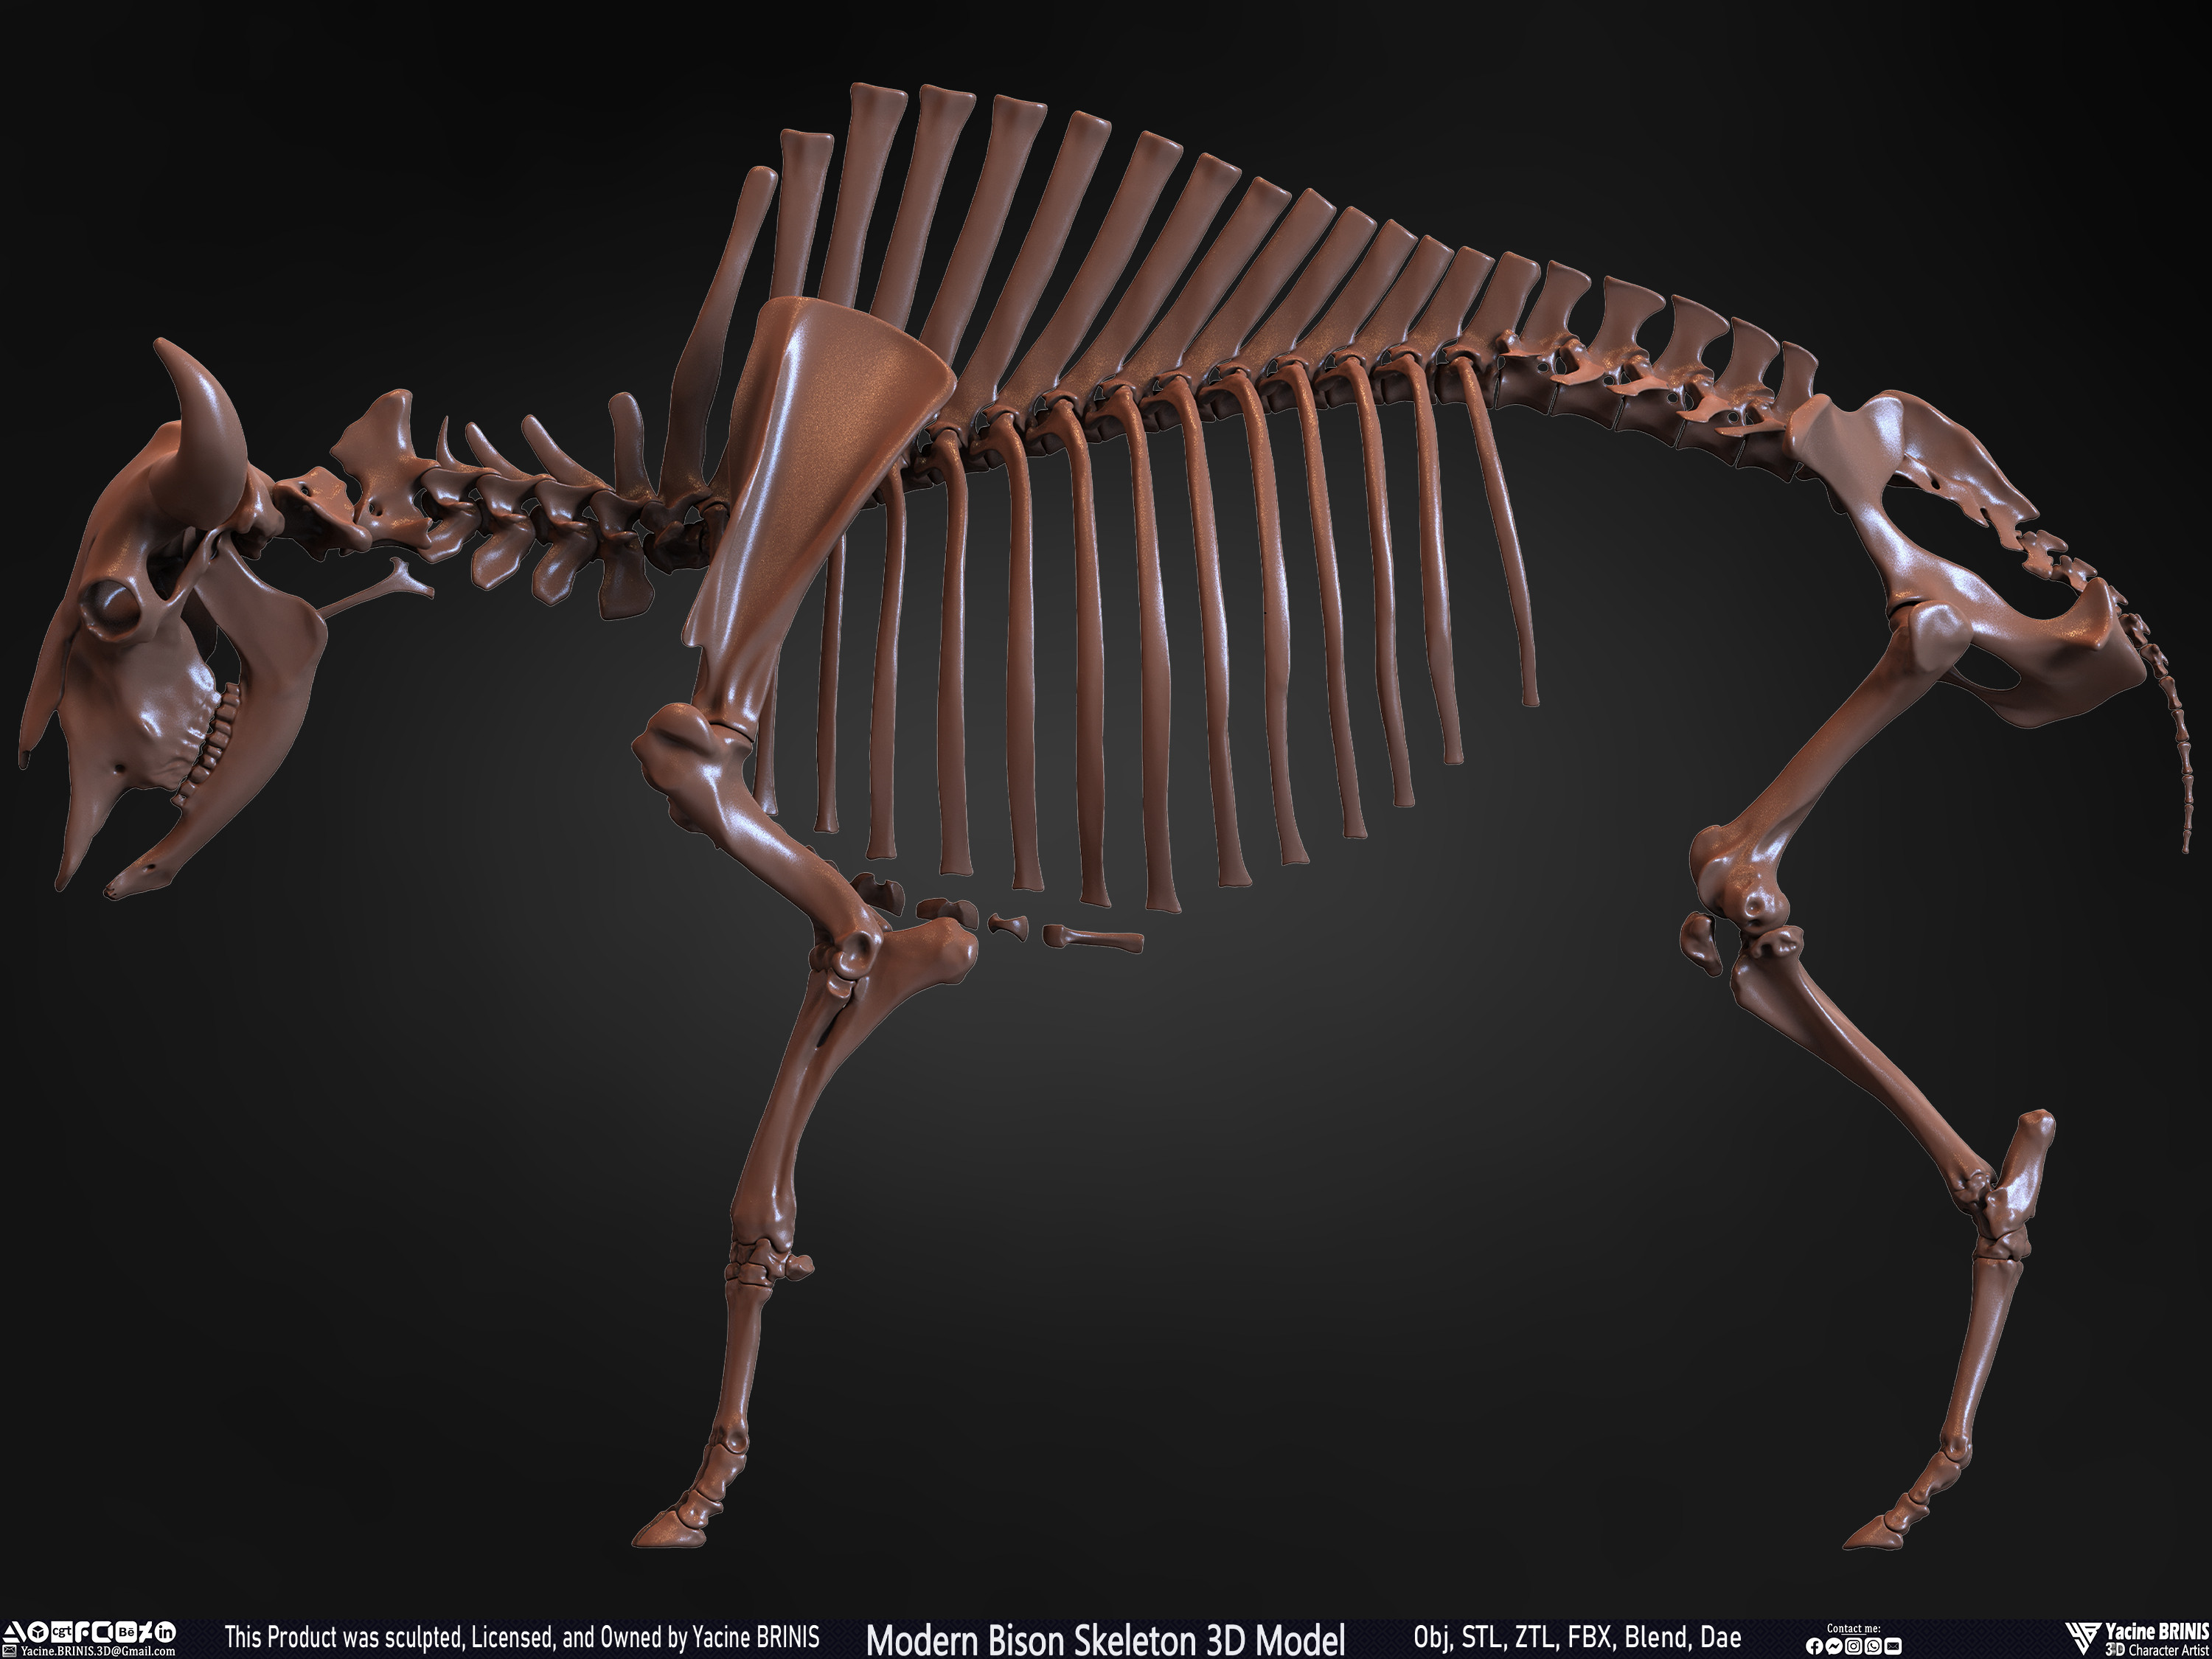 Modern Bison Skeleton 3D Model Sculpted by Yacine BRINIS Set 018